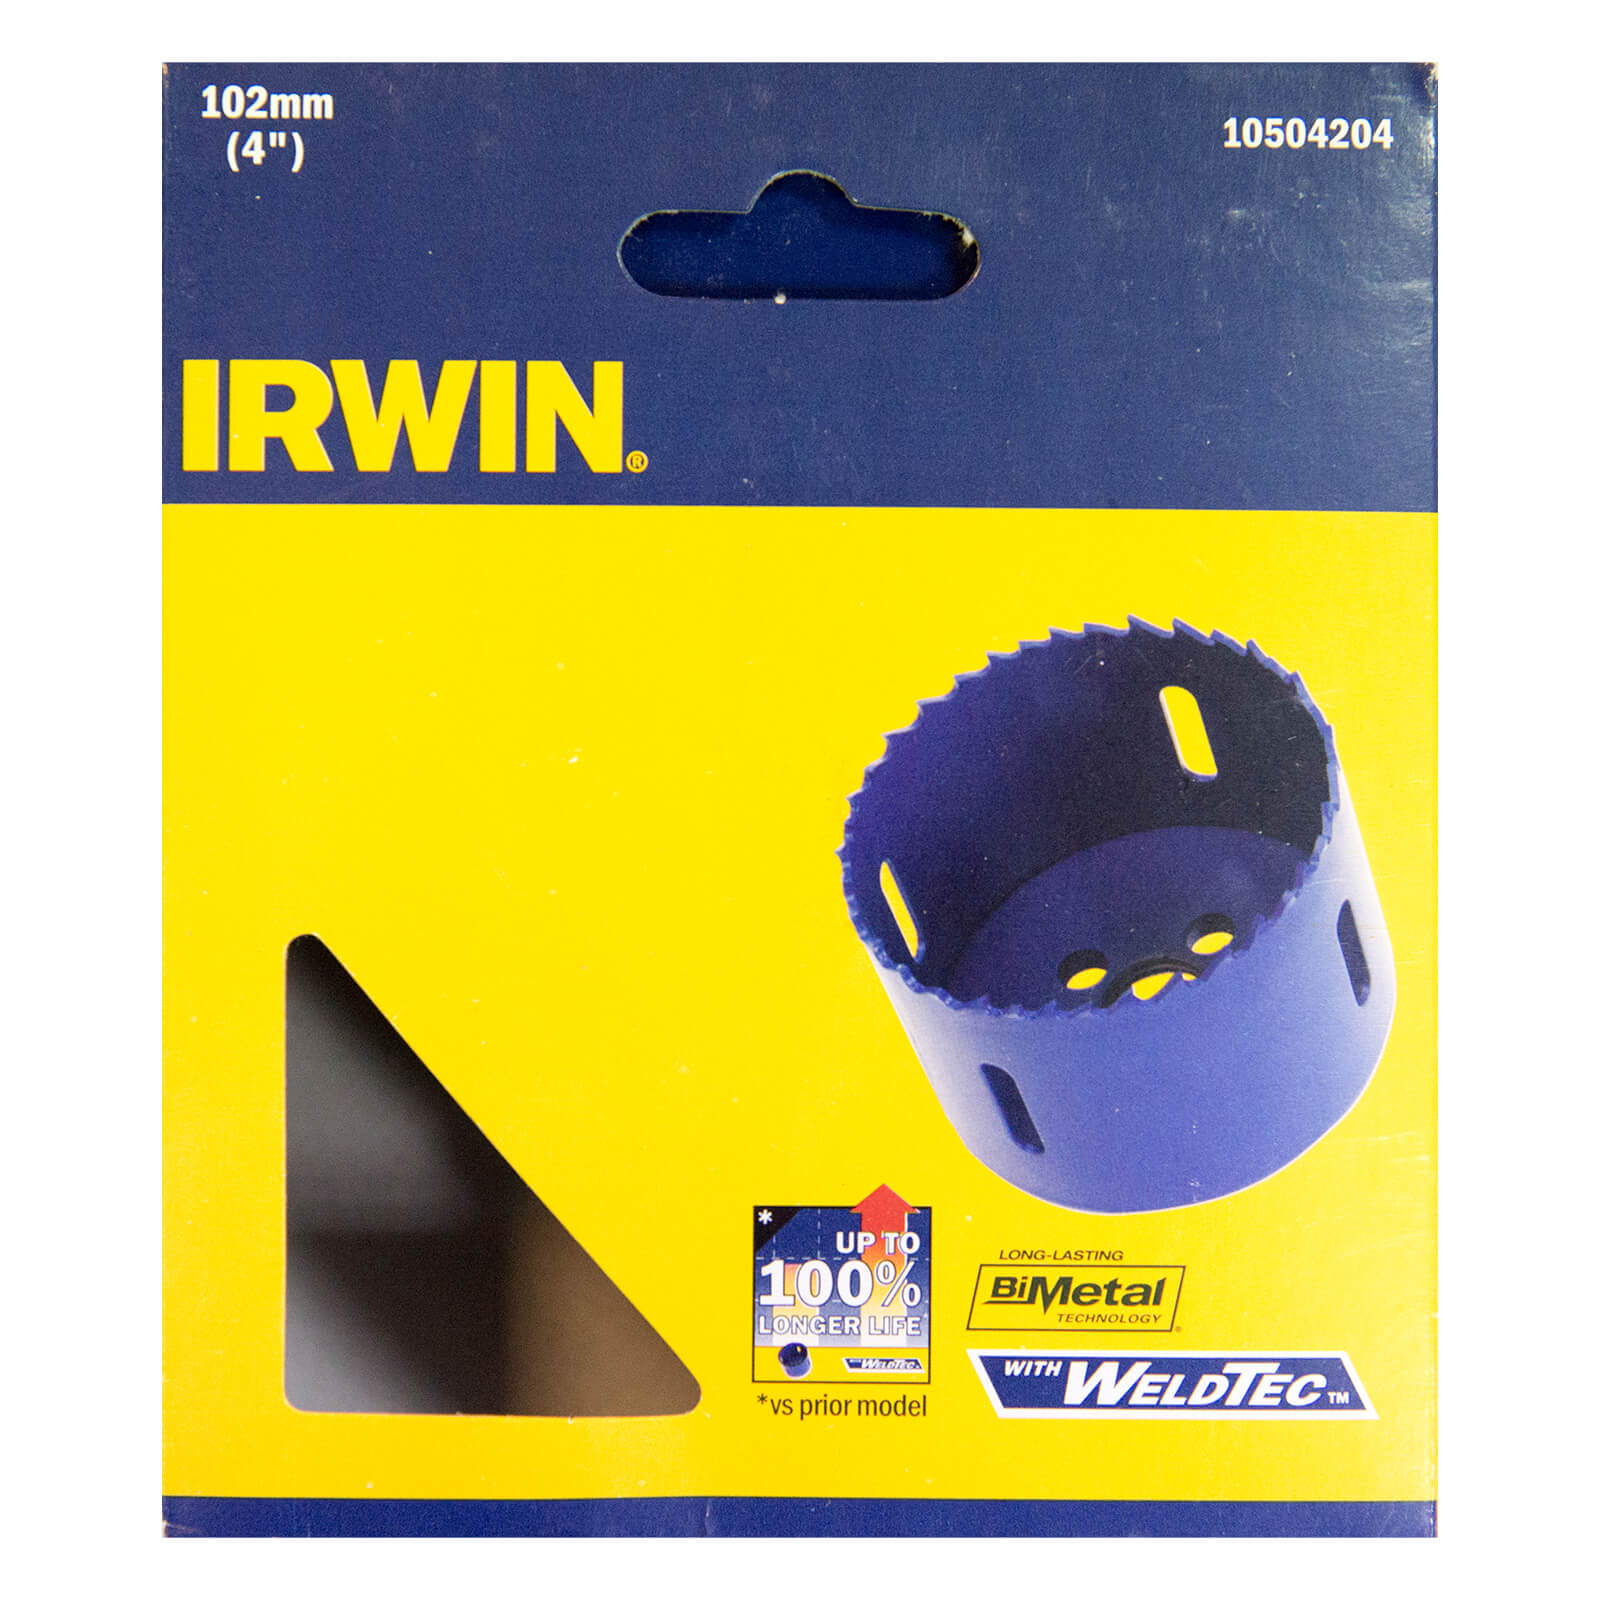 IRWIN Bi-Metal Hole Saw - 102mm